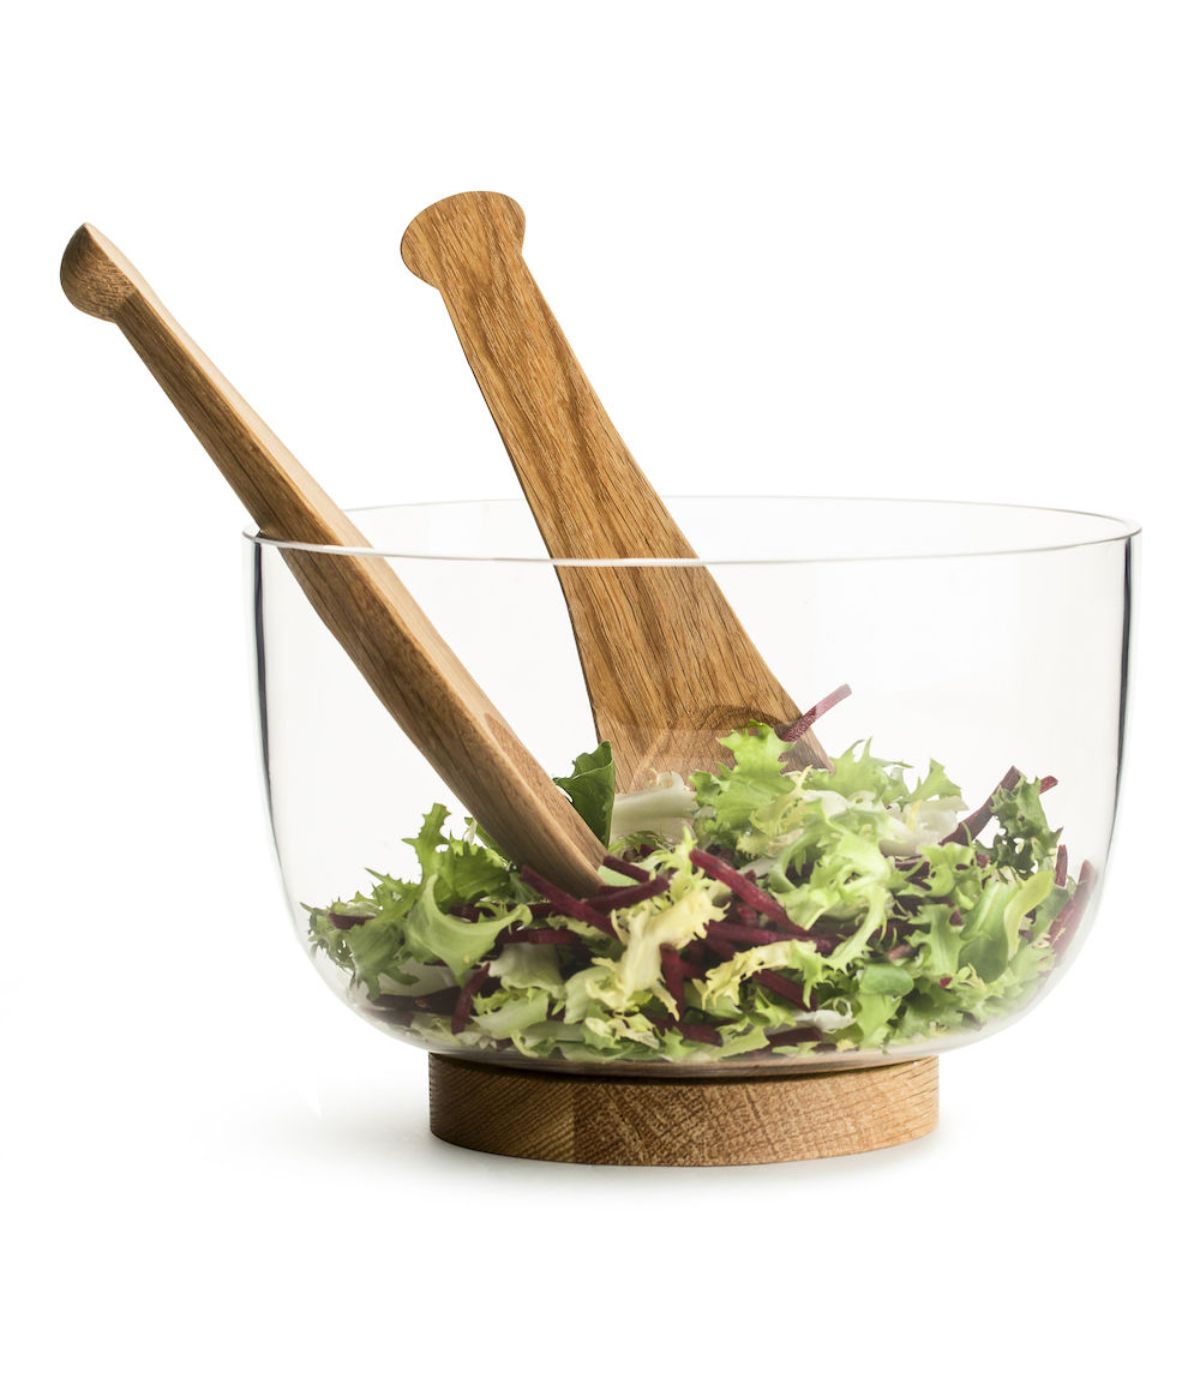 Sagaform By Widgeteer Nature Salad Server, Set of 2, Oak Brown